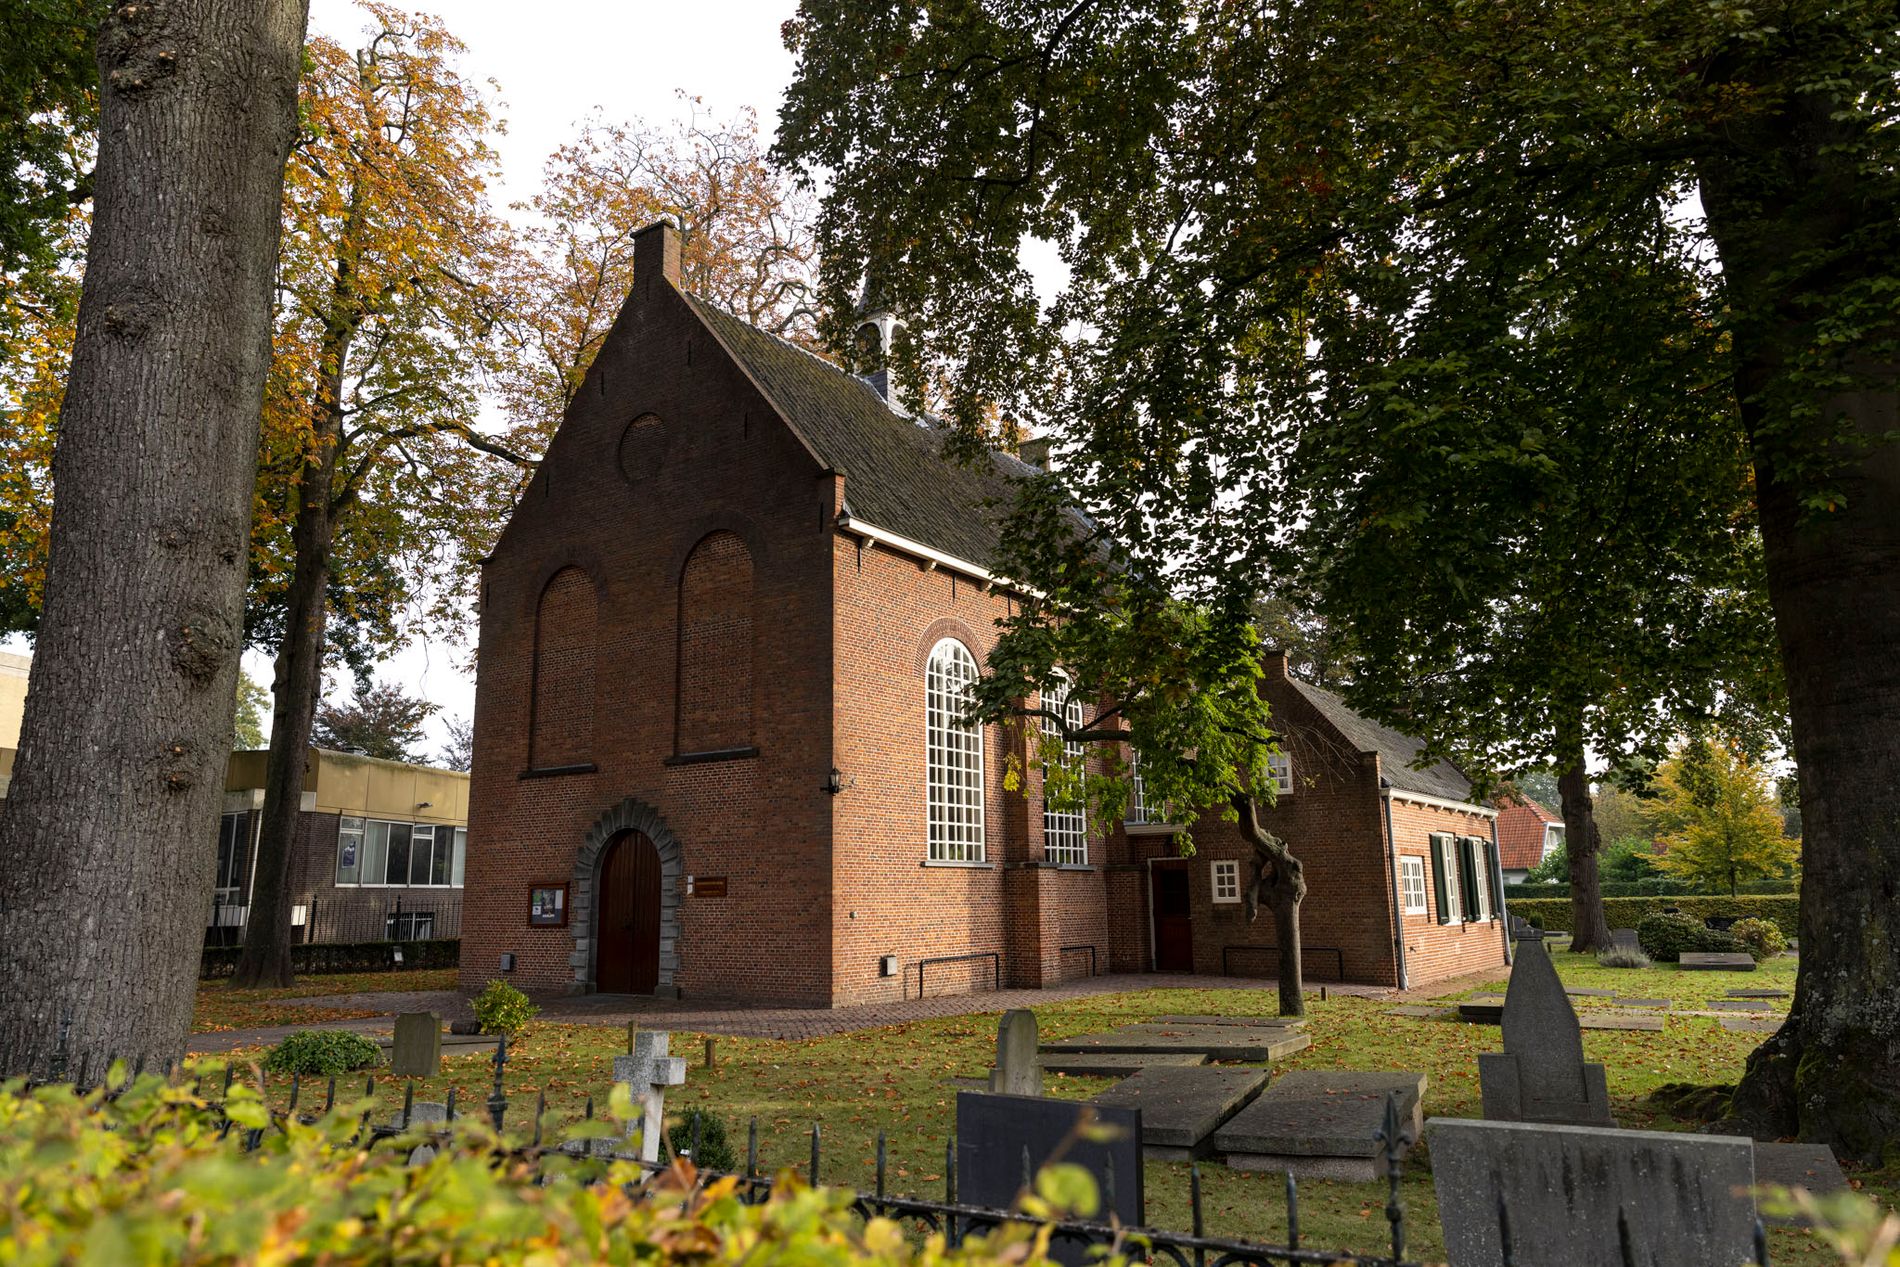 Een foto van het Van Gogh kerkje in Zundert.